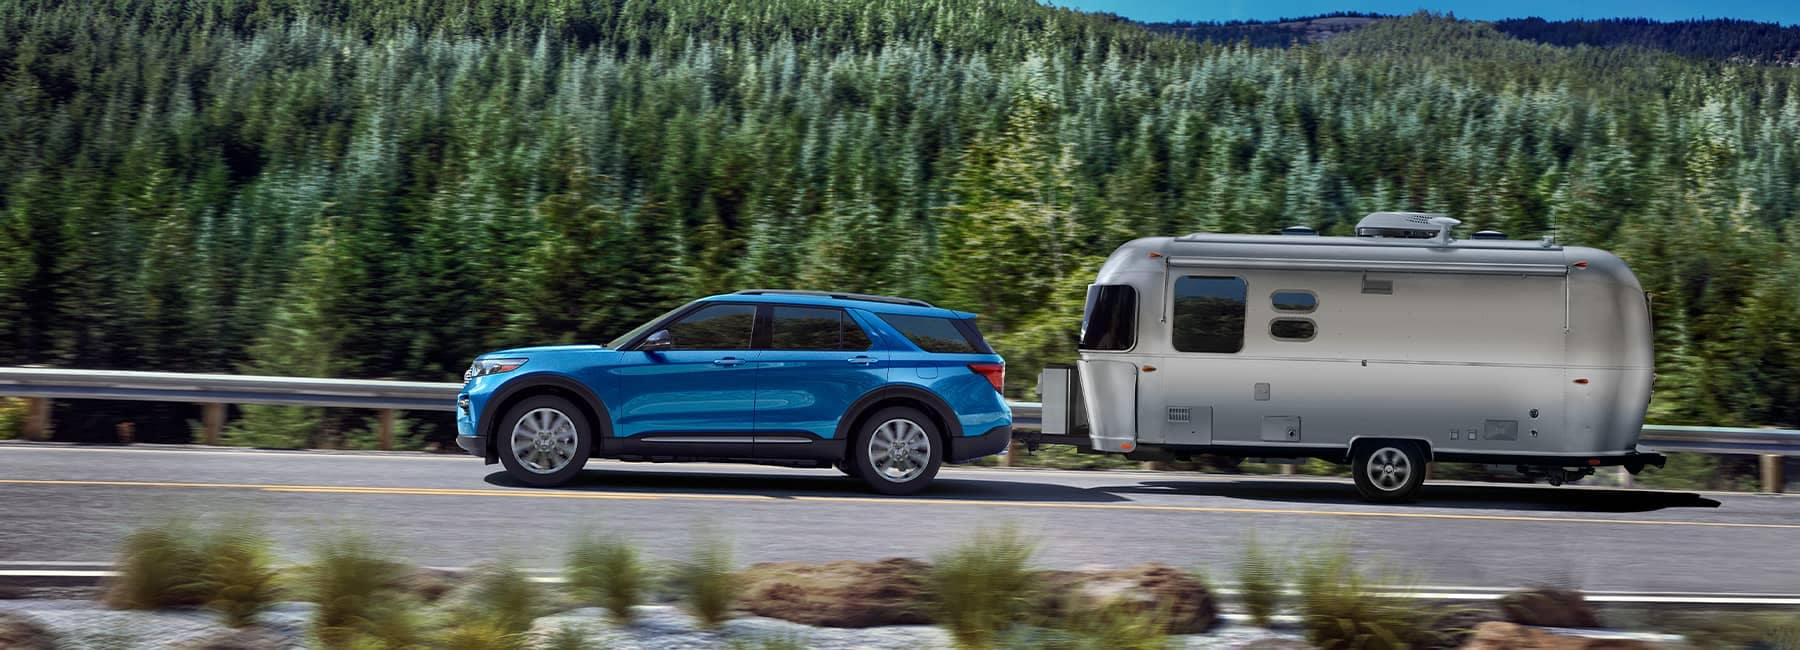 Blue Hybrid 2022 Ford Explorer pulling a camper